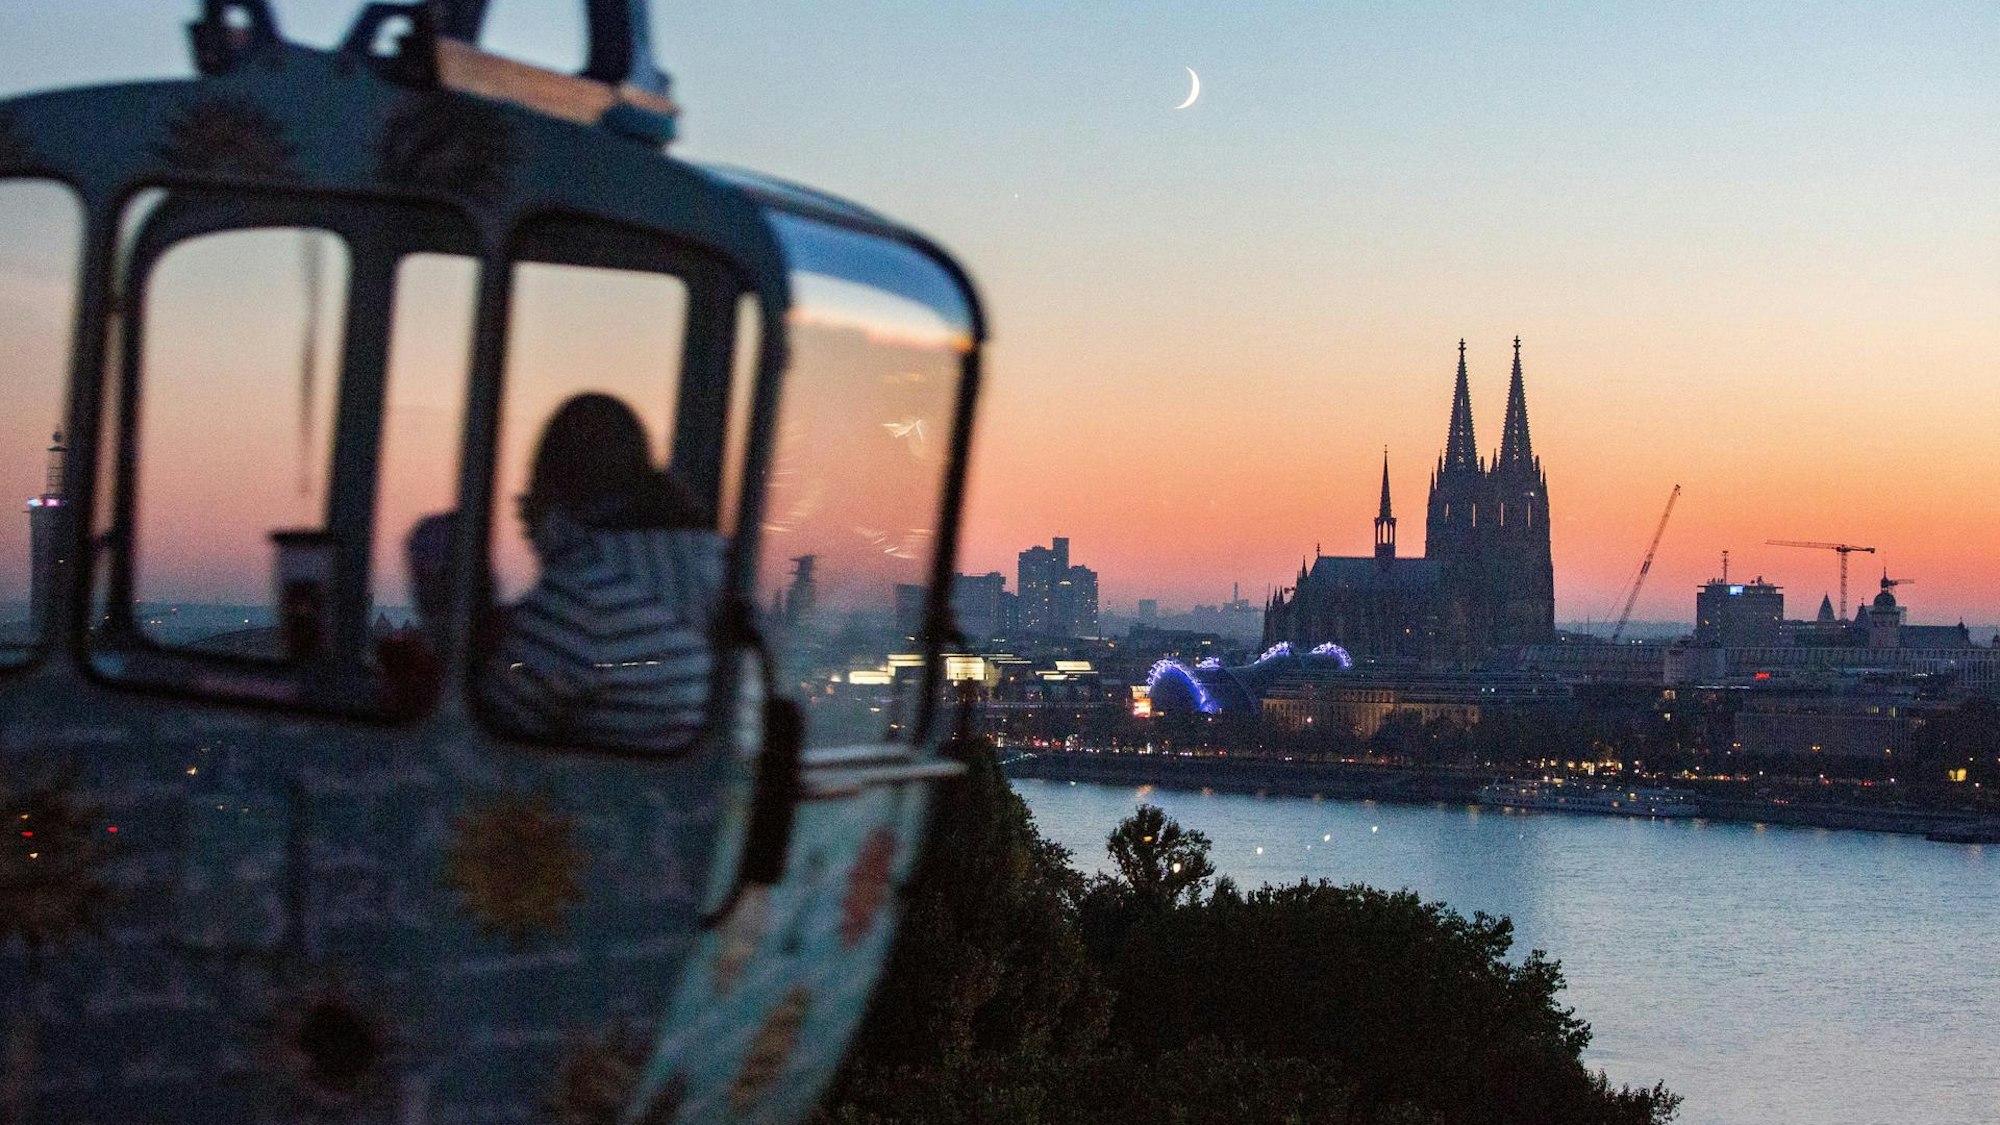 Gondel einer Seilbahn mit Blick auf Rhein und Dom bei Sonnenuntergang